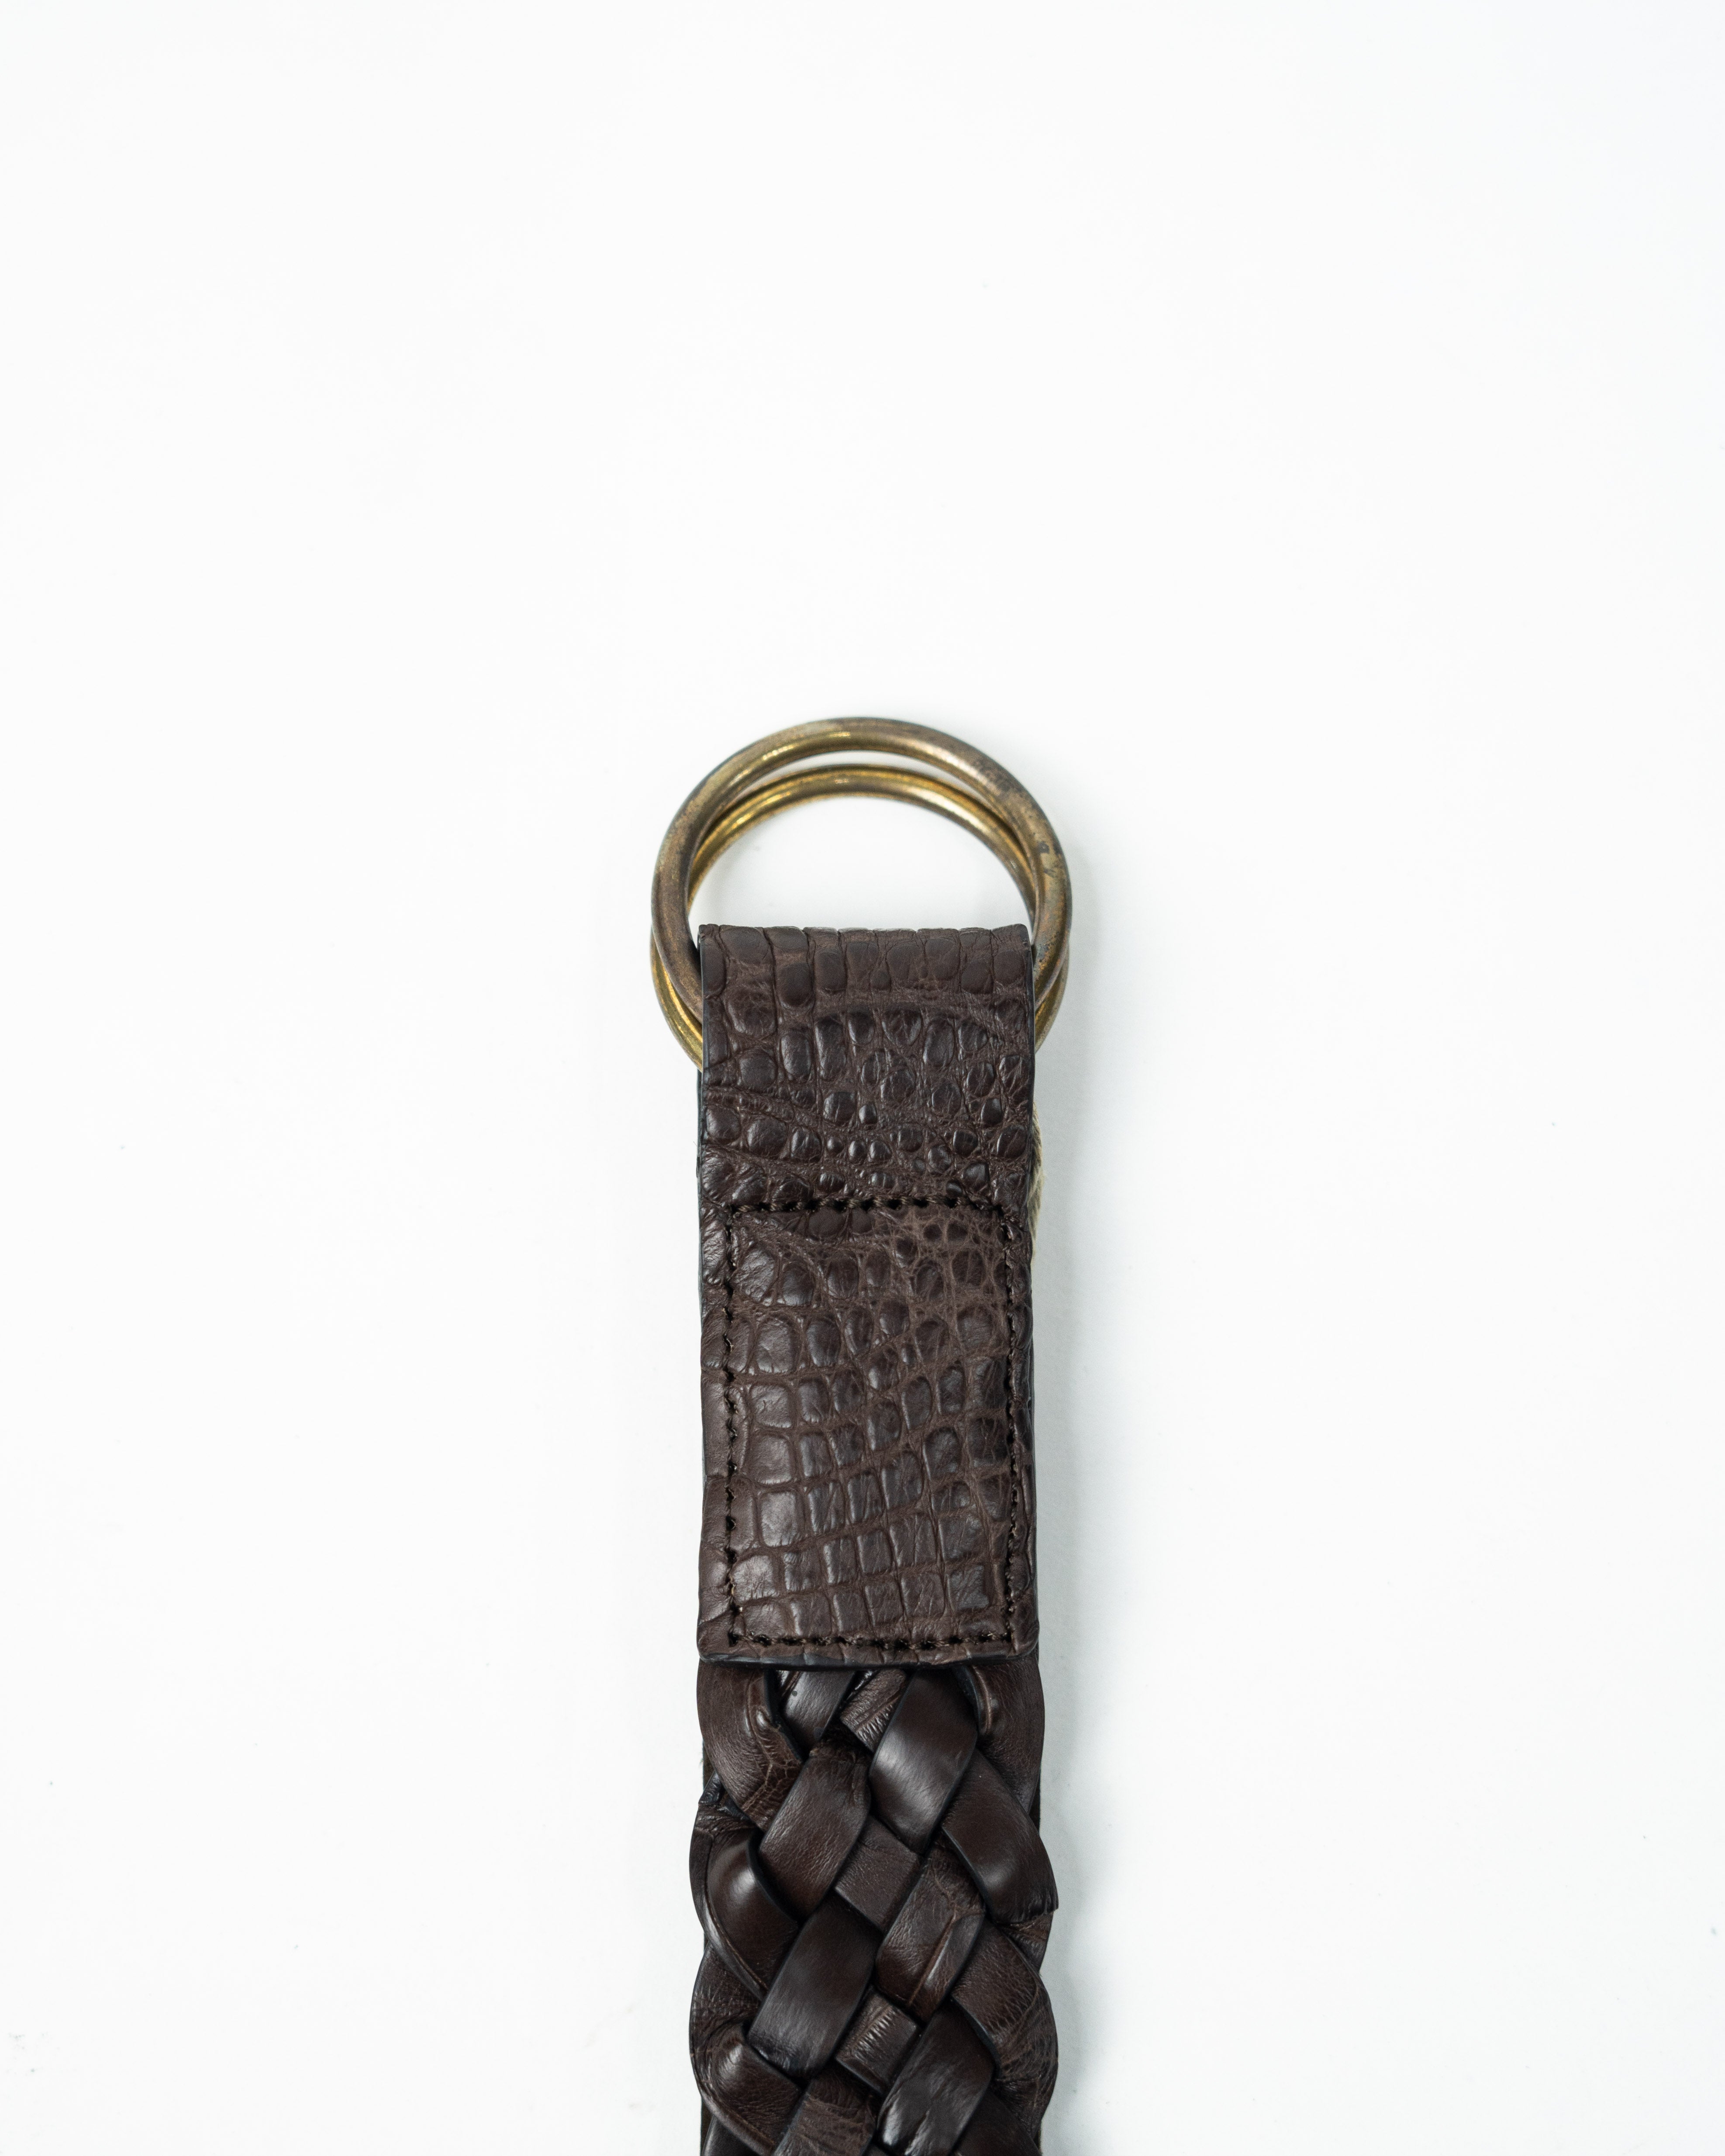 Hand Woven Alligator Belt 58180 | Dark Brown